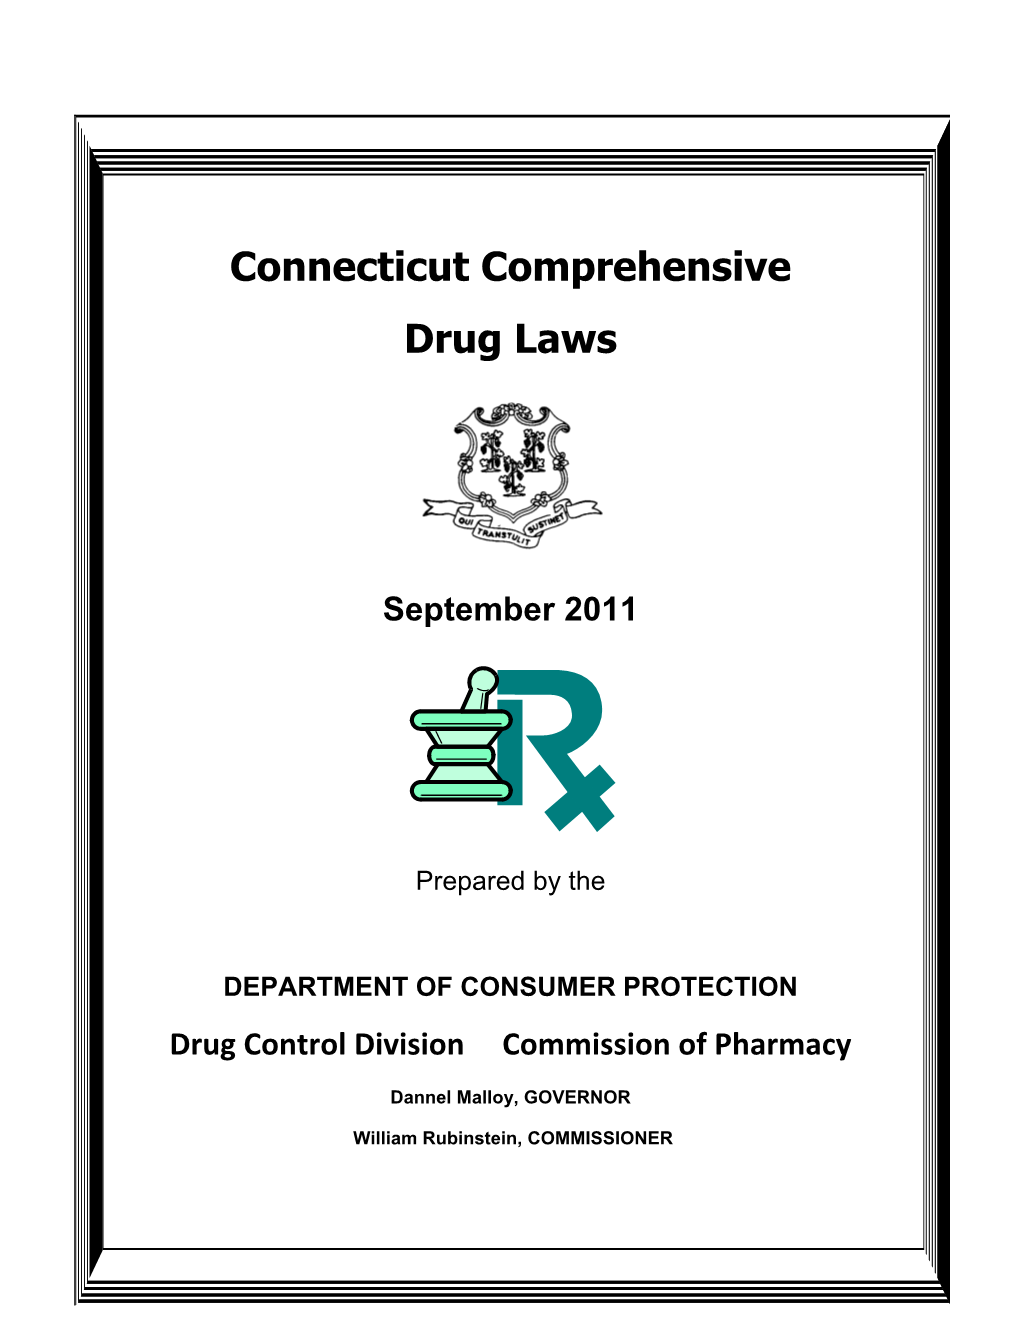 Connecticut Comprehensive Drug Laws